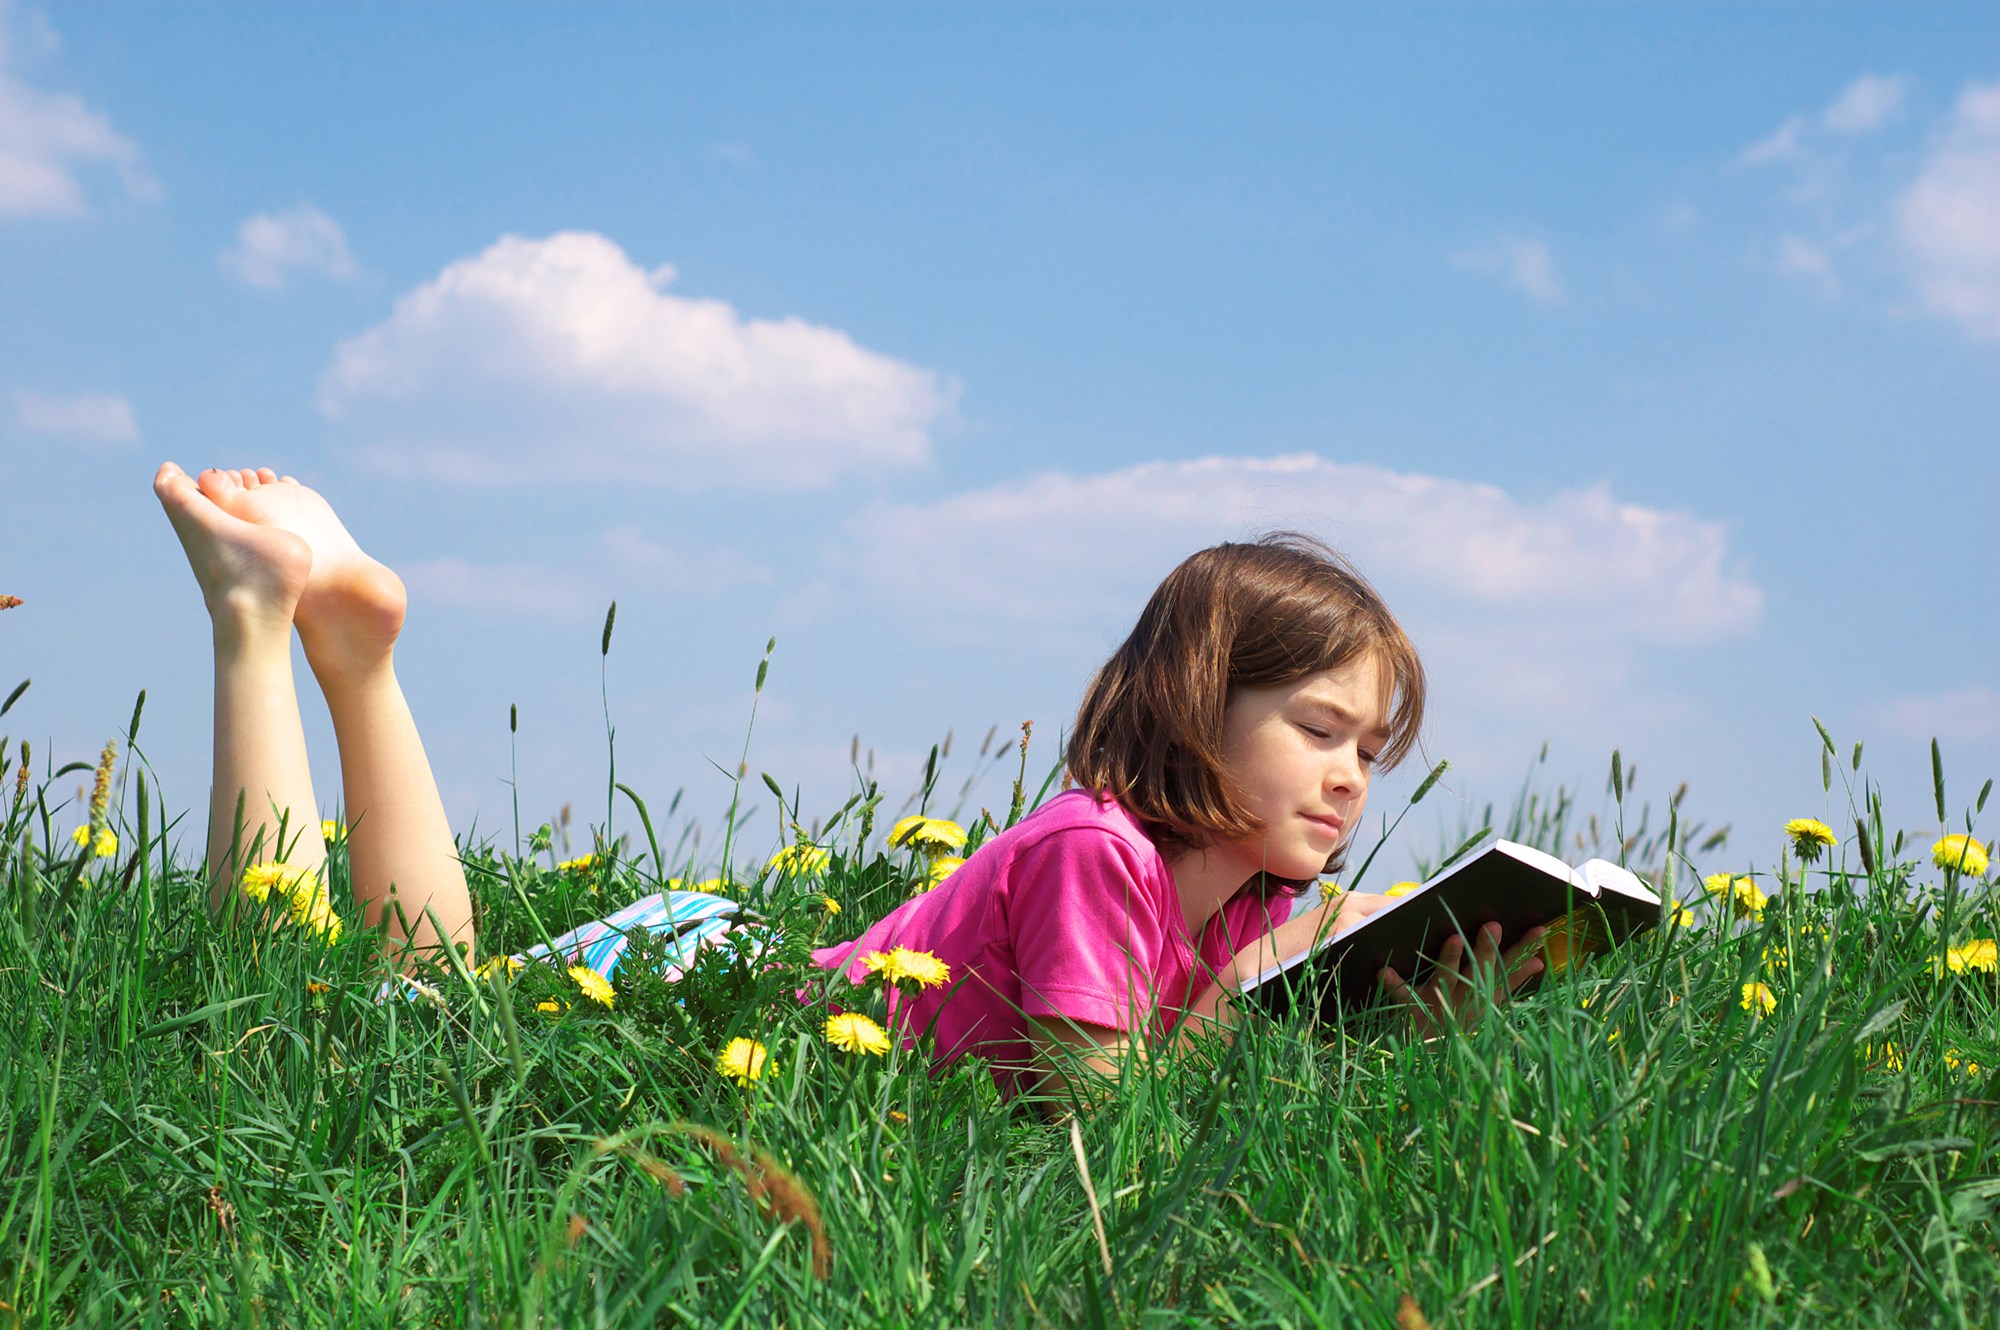 Лето в мире людей. Июнь Июльевич август. Дети и природа. Лето с книгой. Лето дети природа.